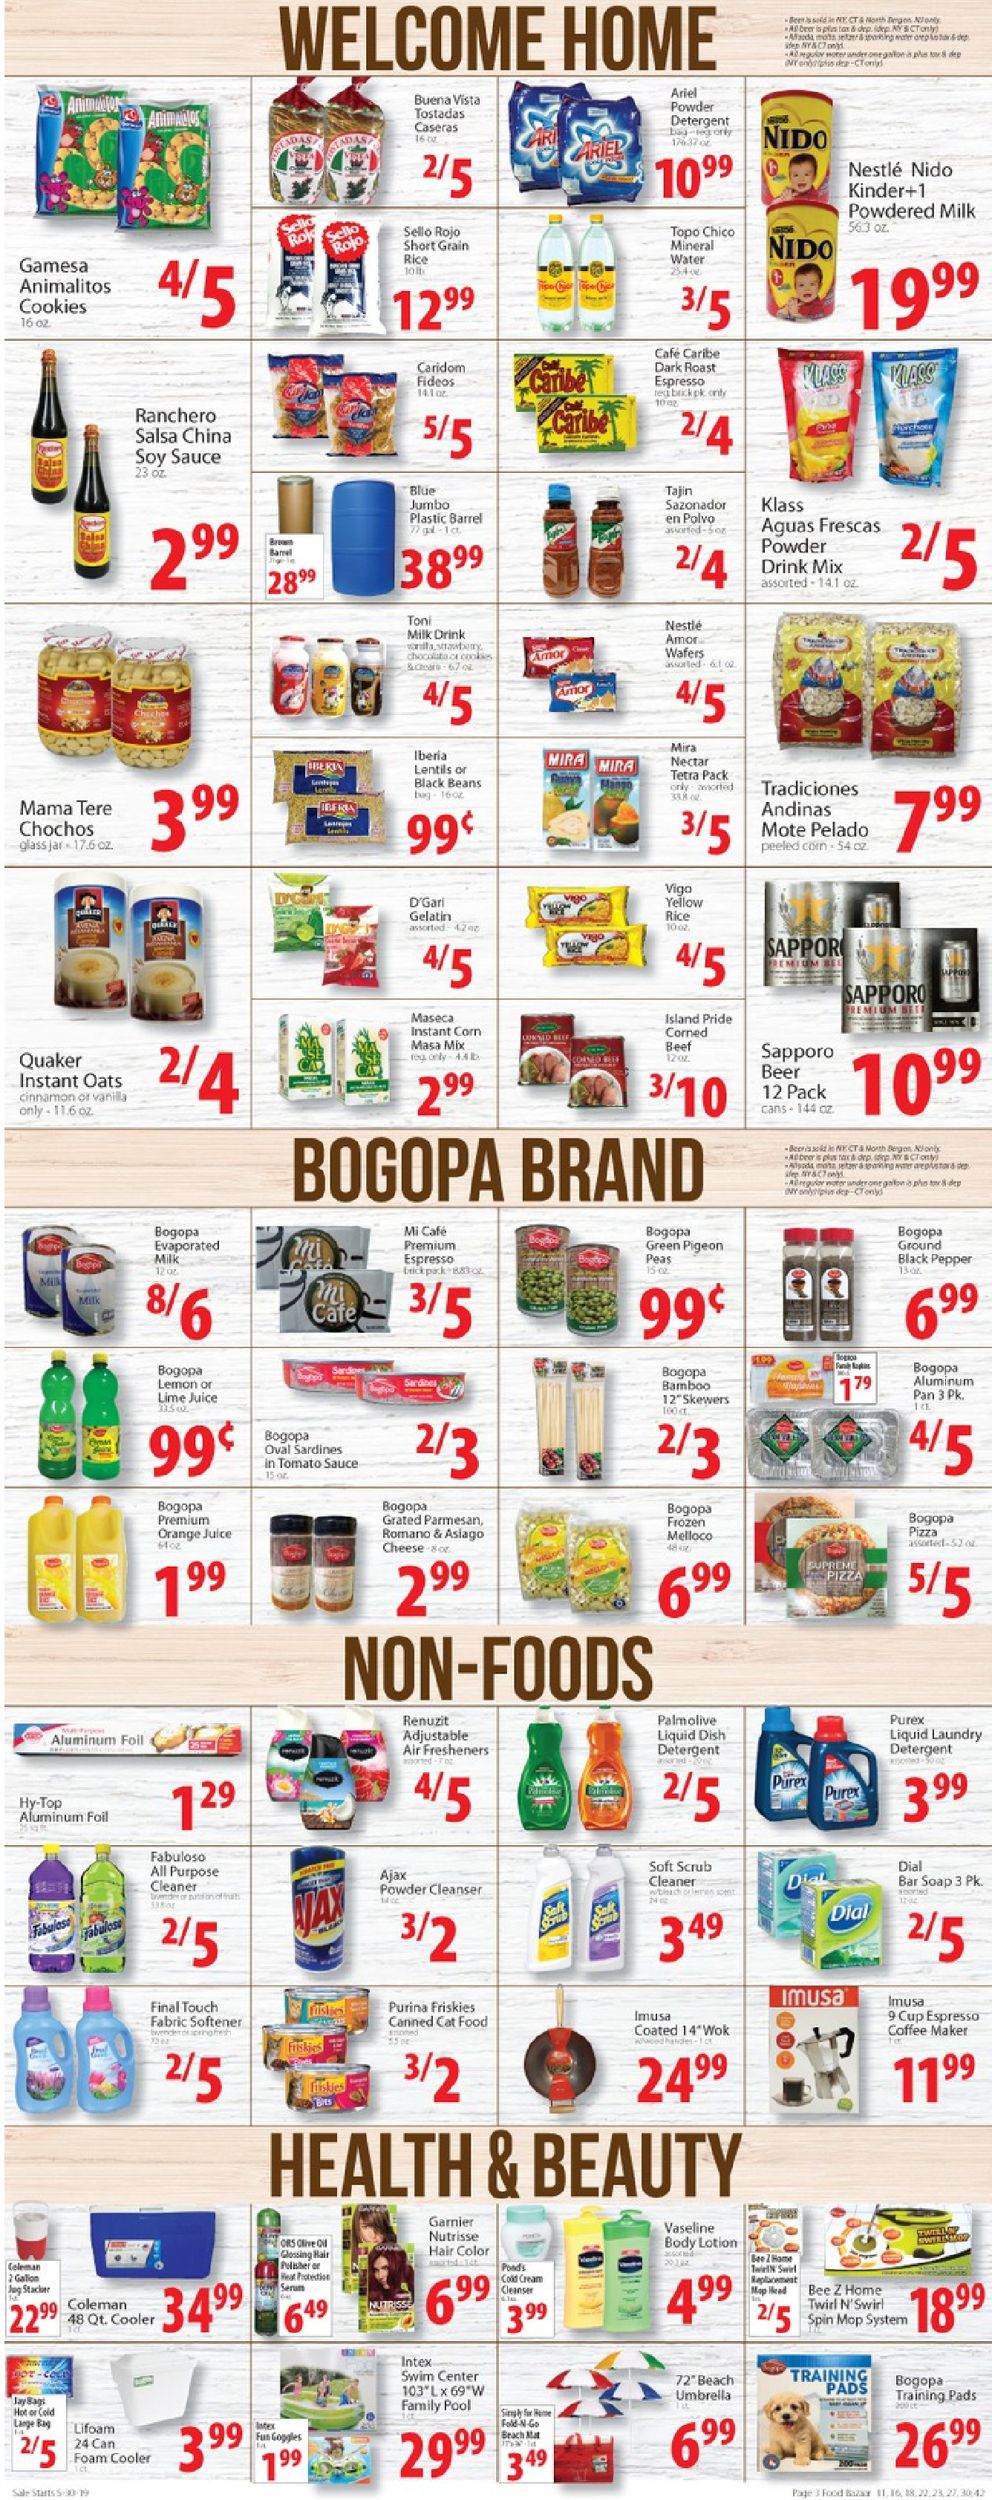 Food Bazaar Weekly Ad Circular - valid 05/30-06/05/2019 (Page 3)